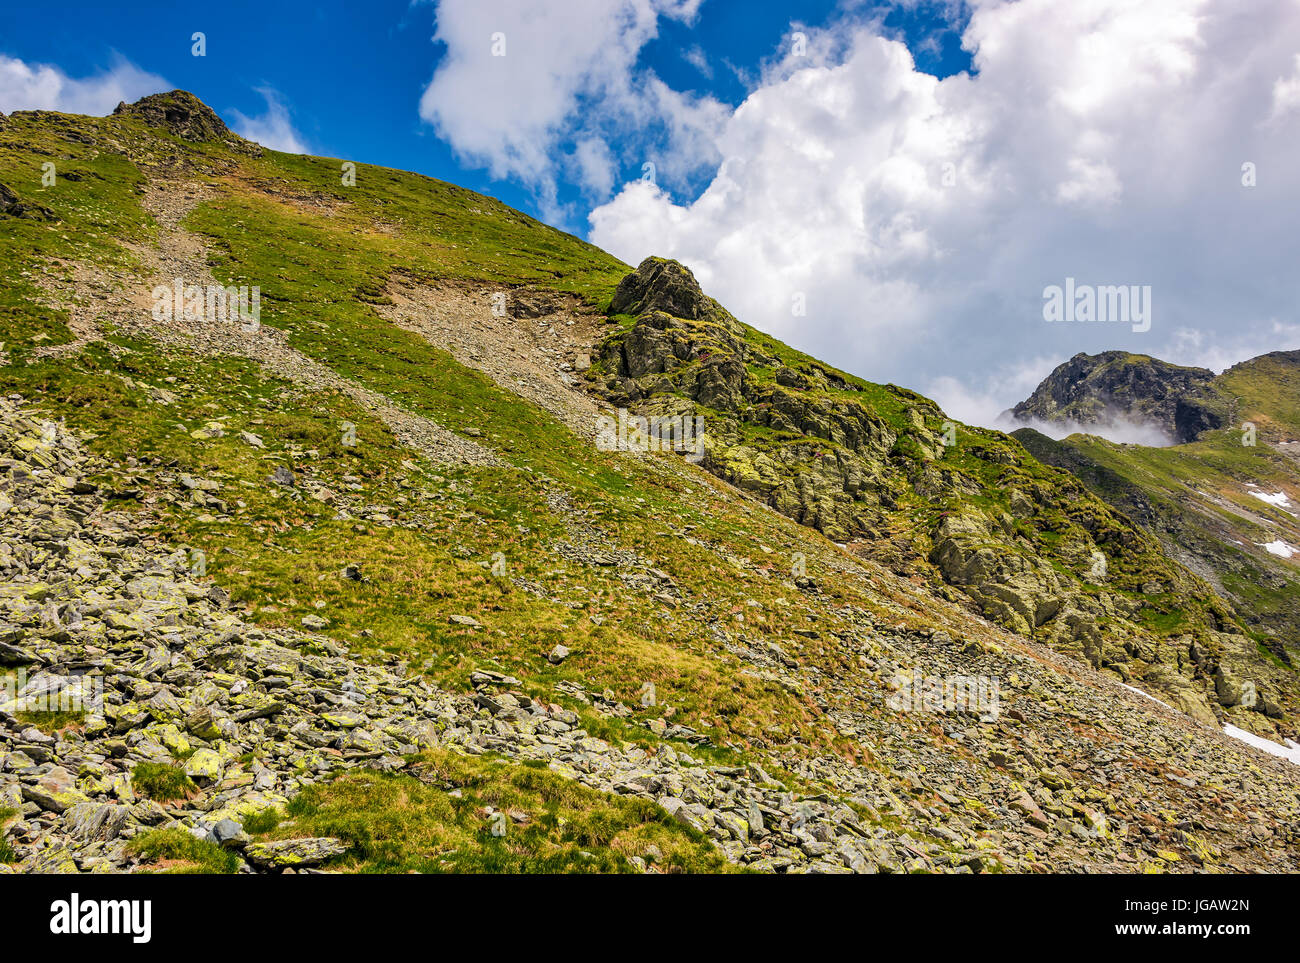 Bordo del ripido pendio sulla collina rocciosa in nuvoloso meteo. lo scenario spettacolare in montagna Foto Stock